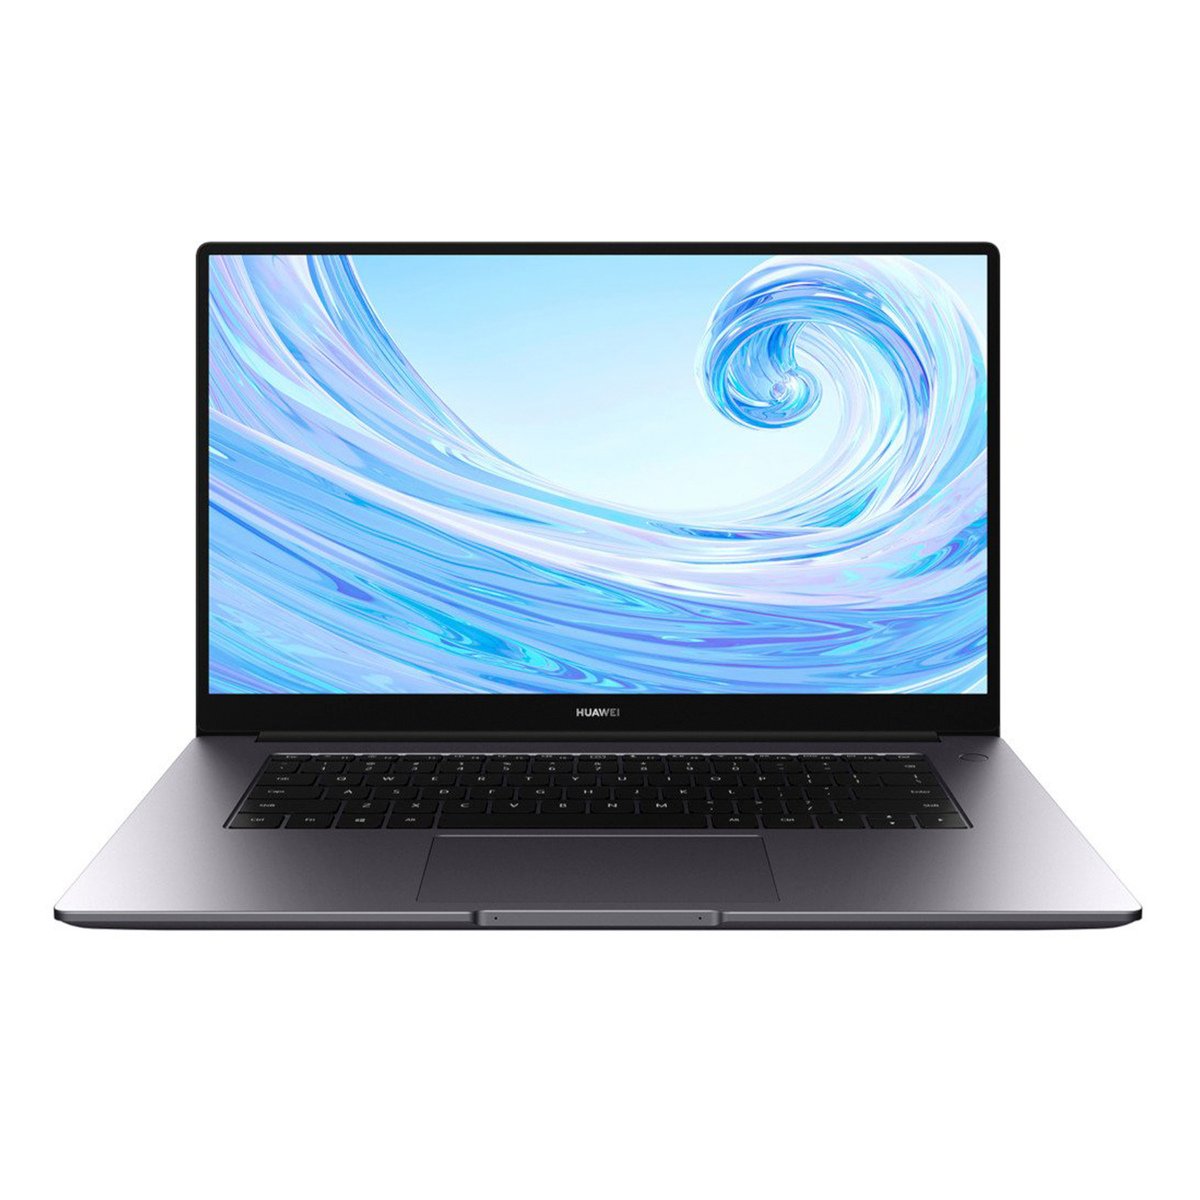 HUAWEI MateBook 15 NoteBook IPS LCD display (Space Grey) - Intel 10th Gen Intel Core i5-10210U processor,8 GB RAM, 256 GB SSD, 1TB HDD,Nvidia GeForce MX250 2GB, Windows 10